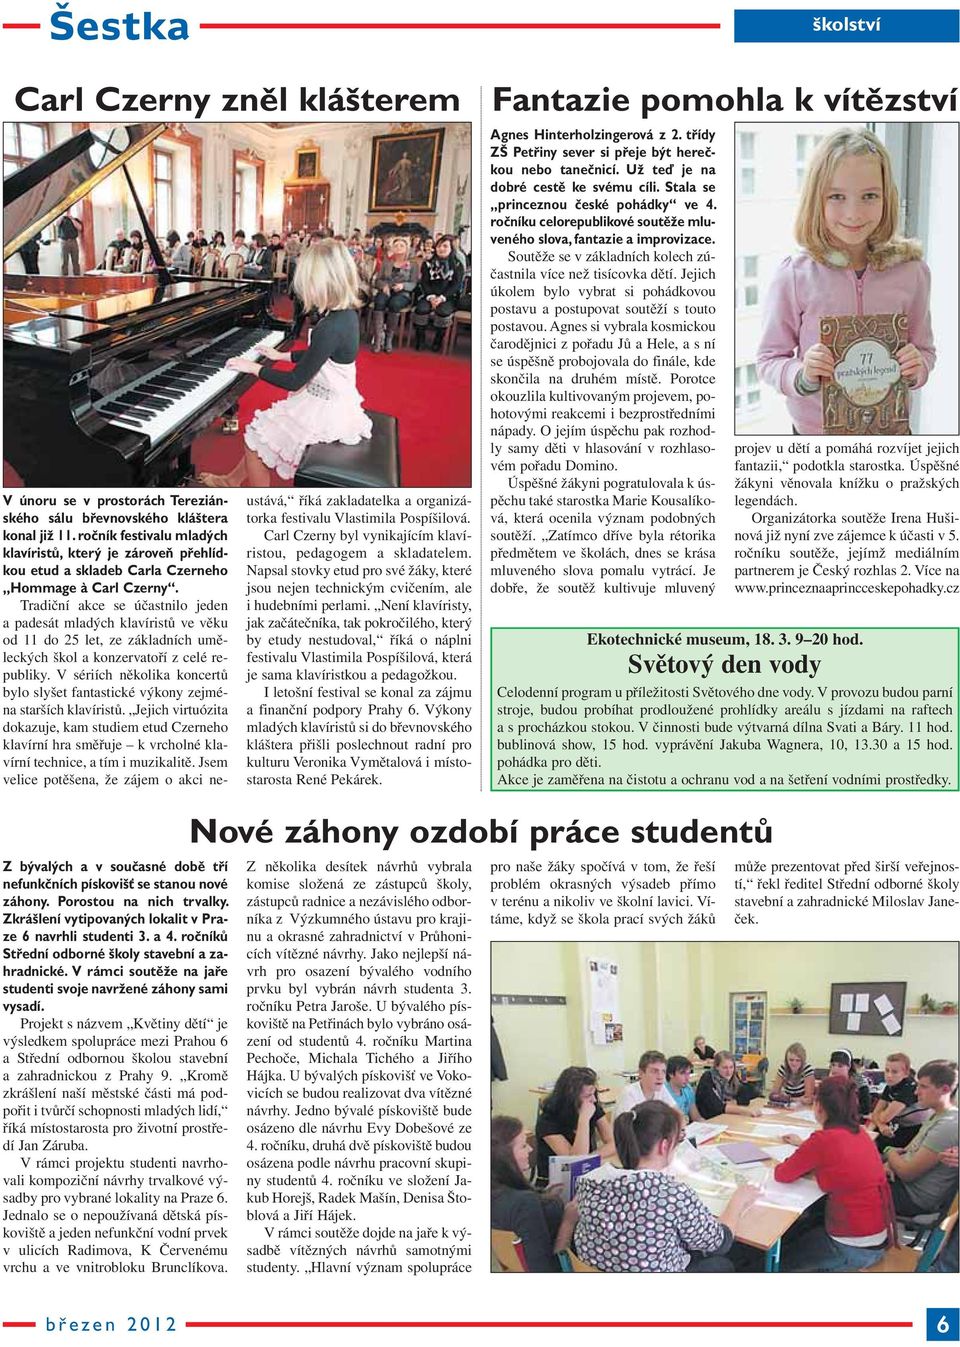 Tradiční akce se účastnilo jeden a padesát mladých klavíristů ve věku od 11 do 25 let, ze základních uměleckých škol a konzervatoří z celé re - publiky.